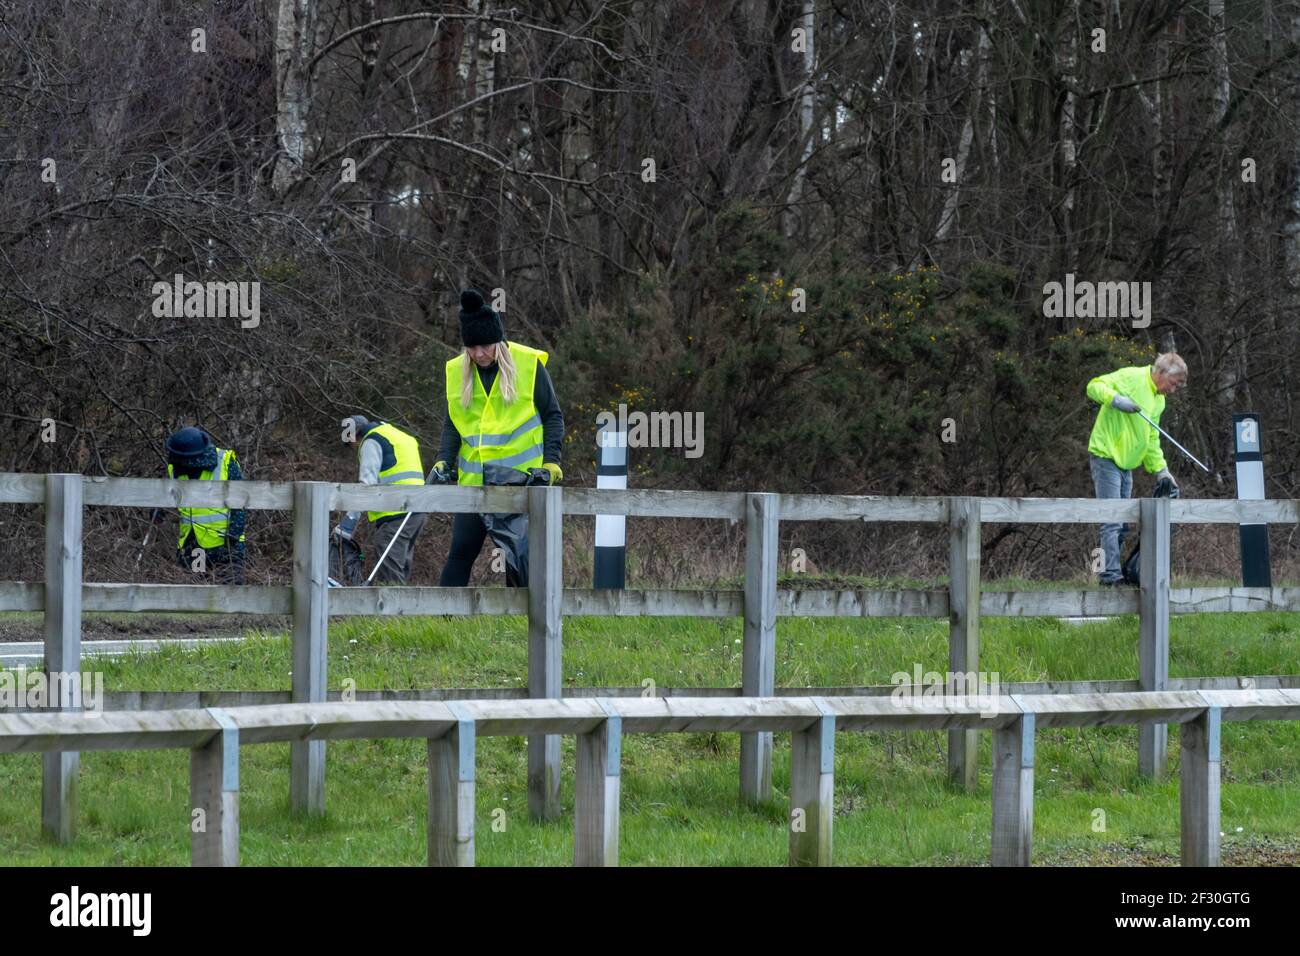 Los voluntarios pican basura en el campo usando ropa de alta visibilidad, Reino Unido. Enyesando verjas al borde de la carretera. Foto de stock